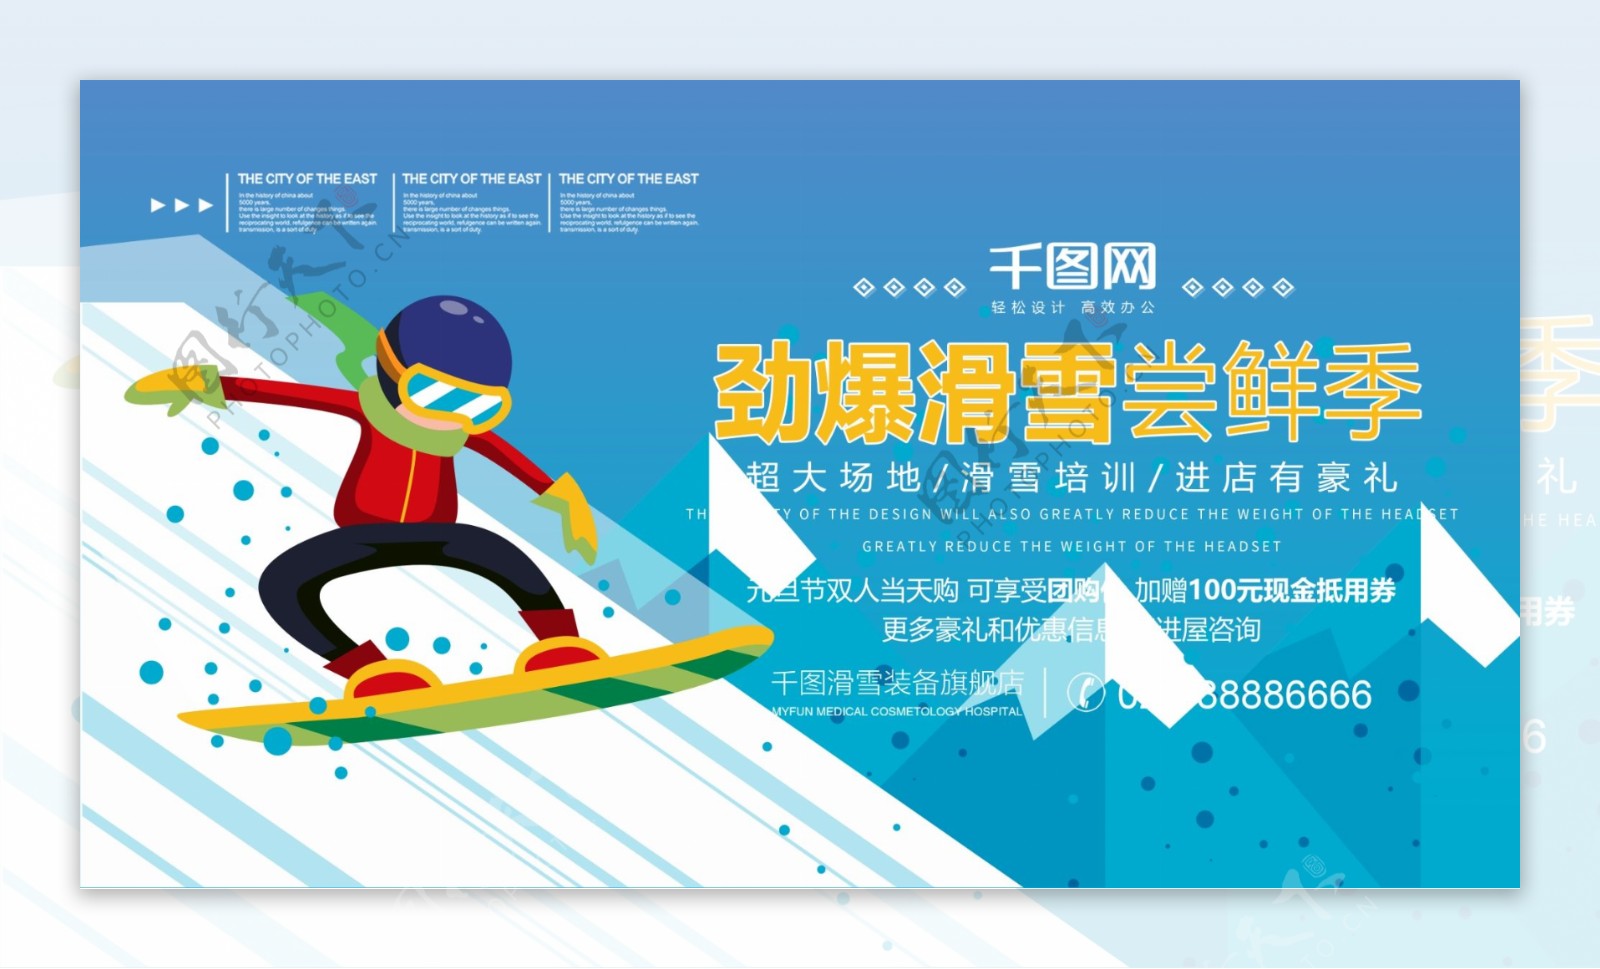 劲爆滑雪尝鲜季活动宣传海报PSD源文件